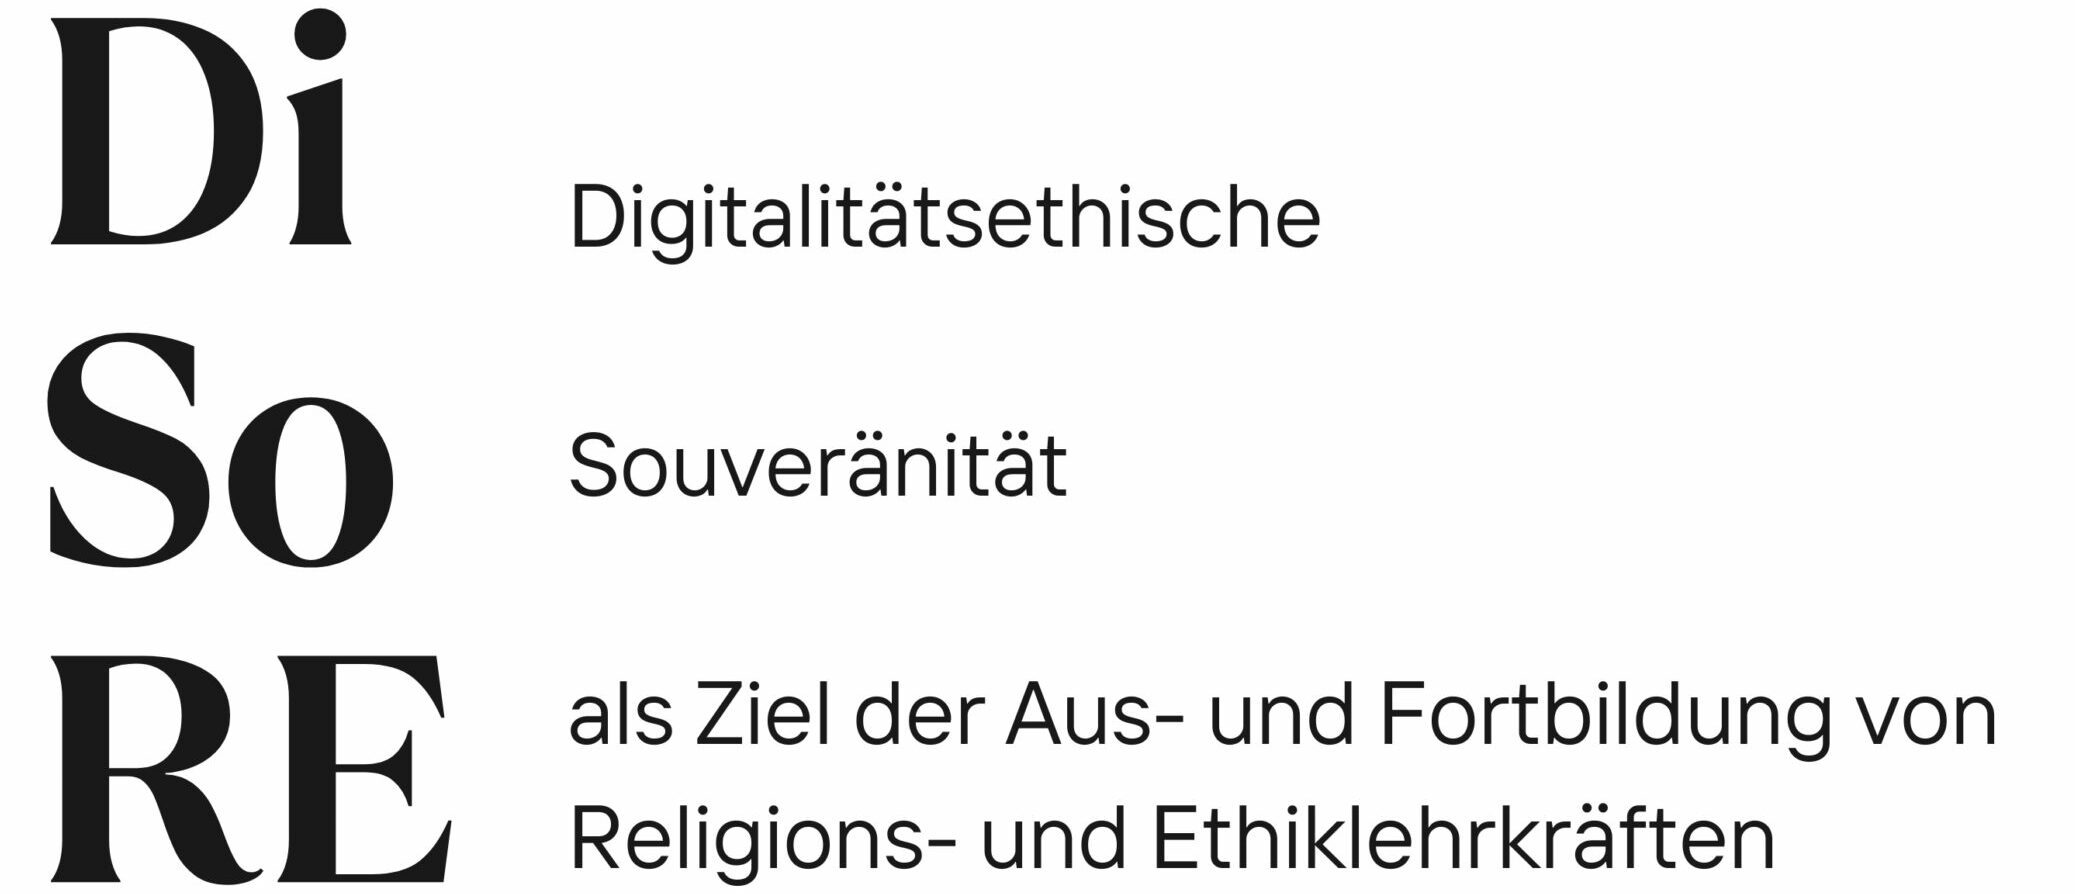 Digitalitätsethische Souveränität als Ziel der Aus- und Fortbildung von Religions- und Ethiklehrkräften (DiSo-RE)